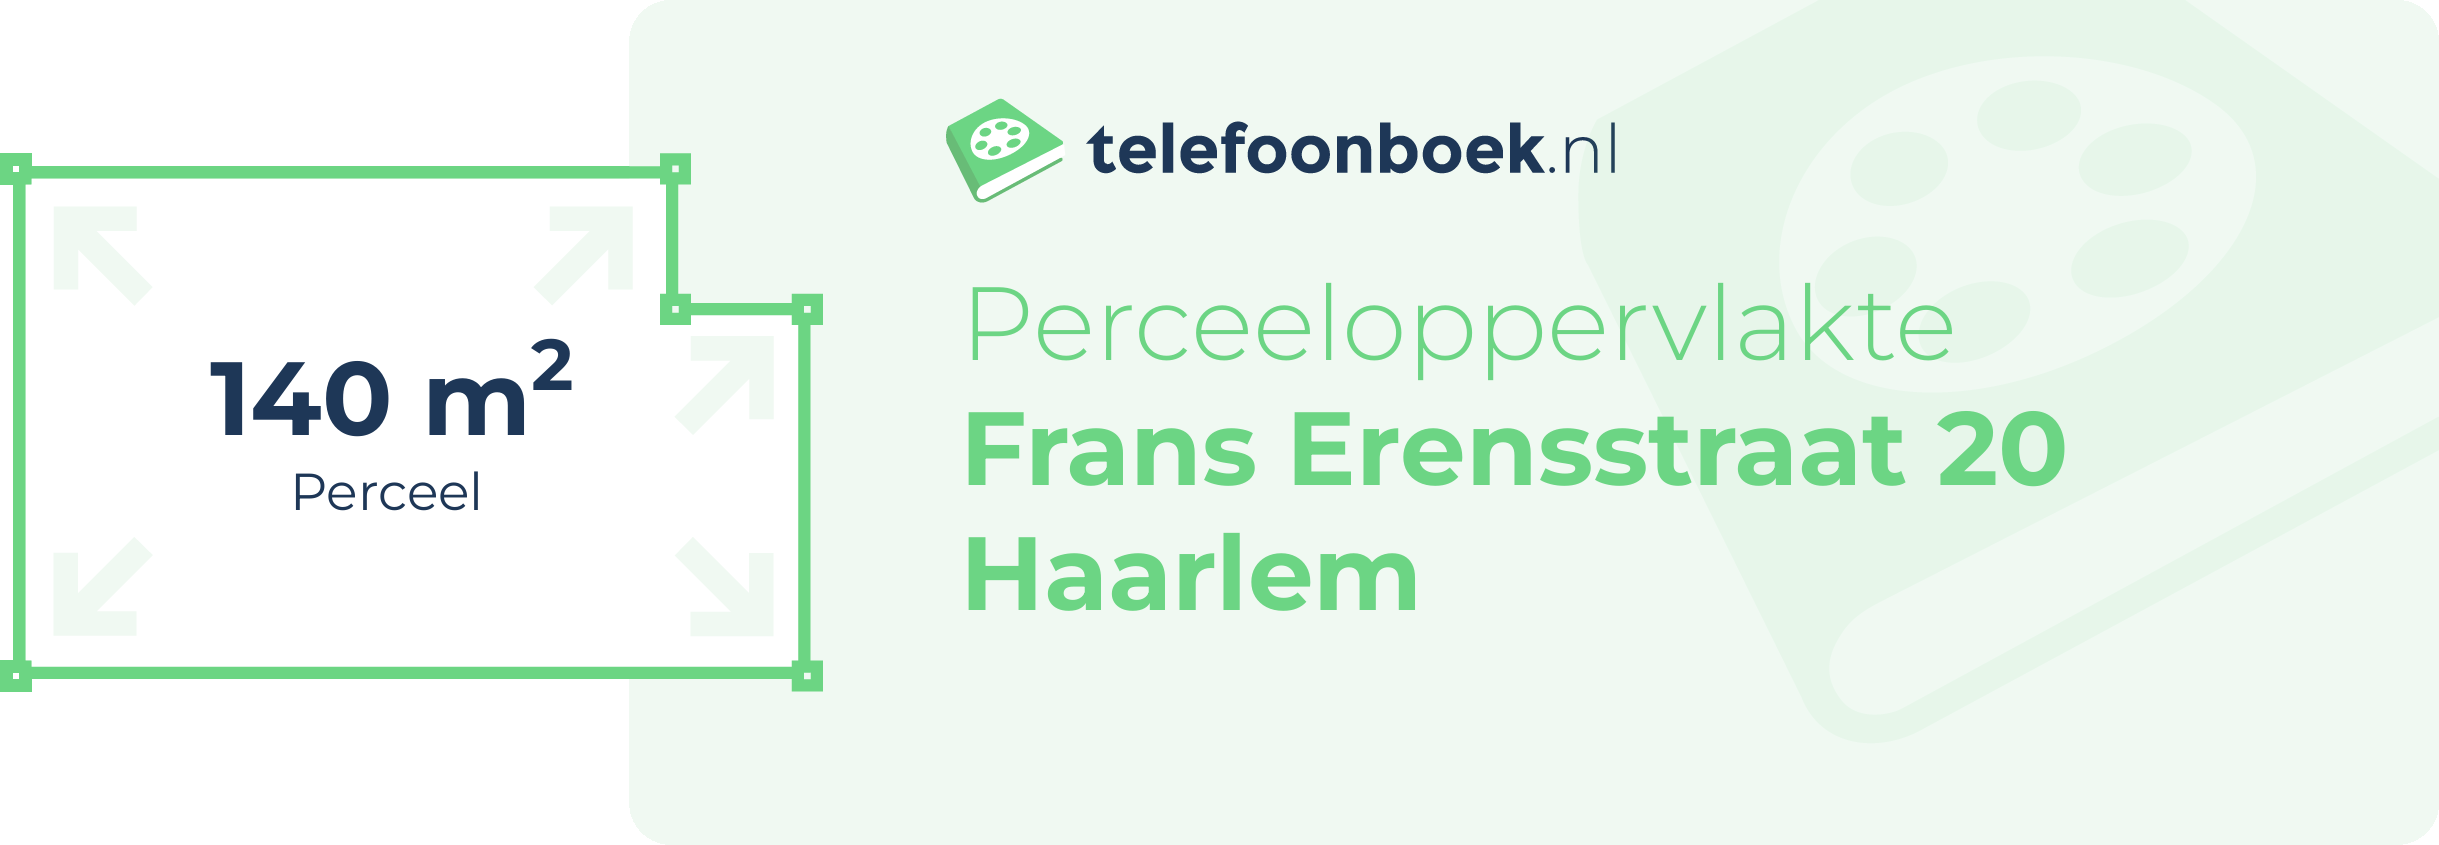 Perceeloppervlakte Frans Erensstraat 20 Haarlem